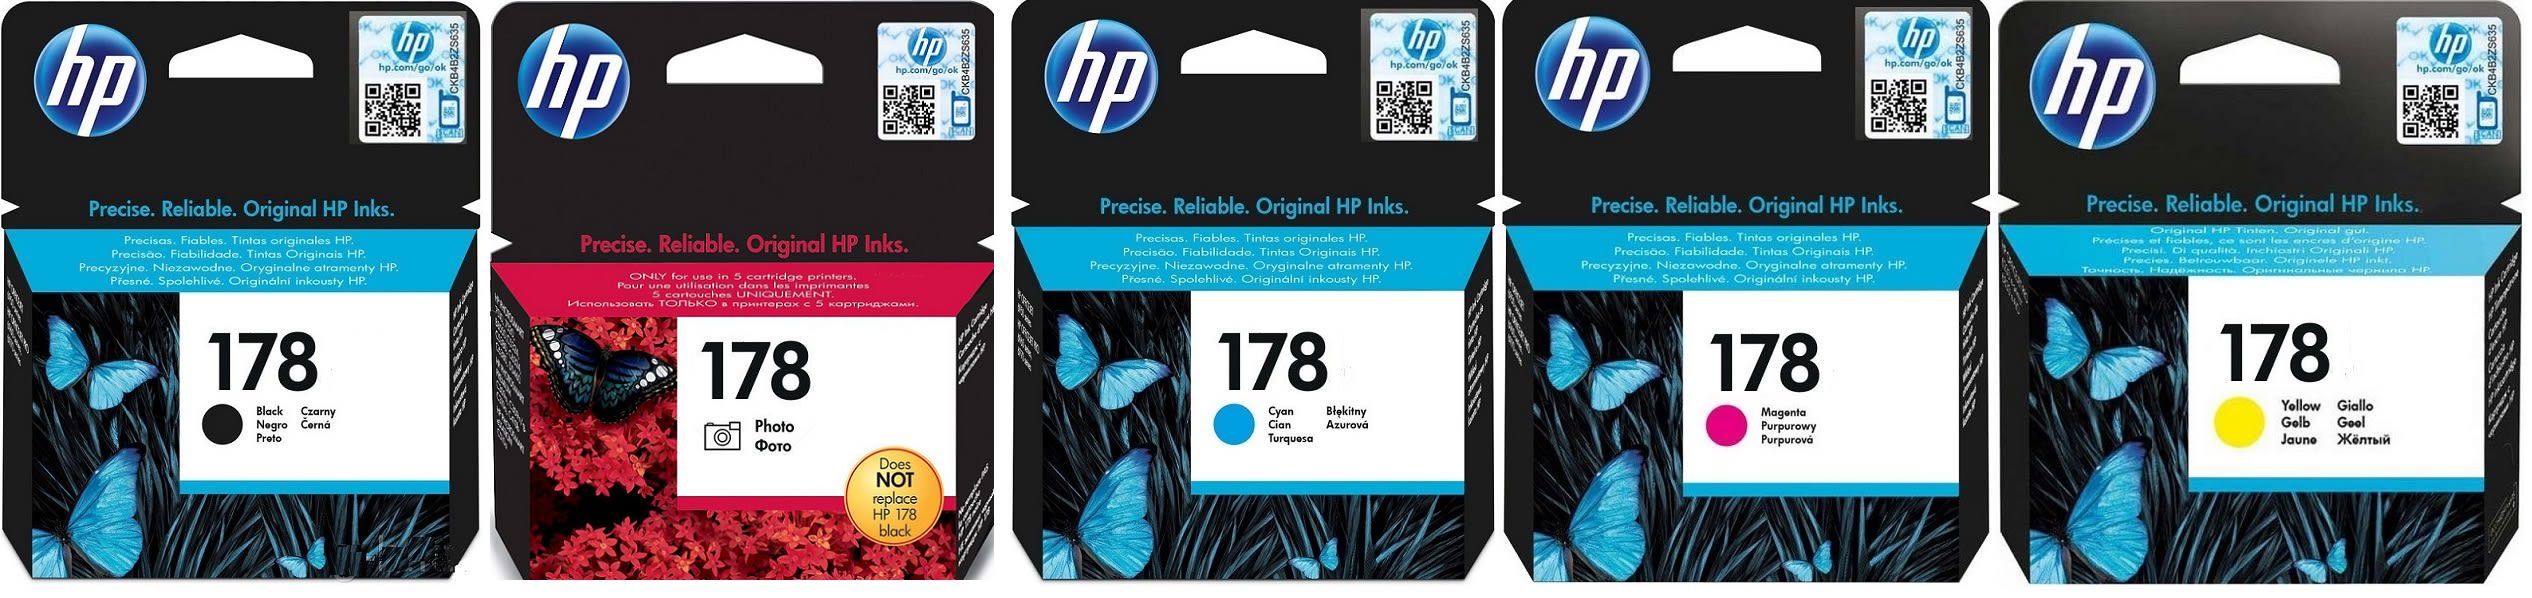 Картриджи hp 178 для HP Photosmart C5380. Купить комплект оригинальных картриджей.